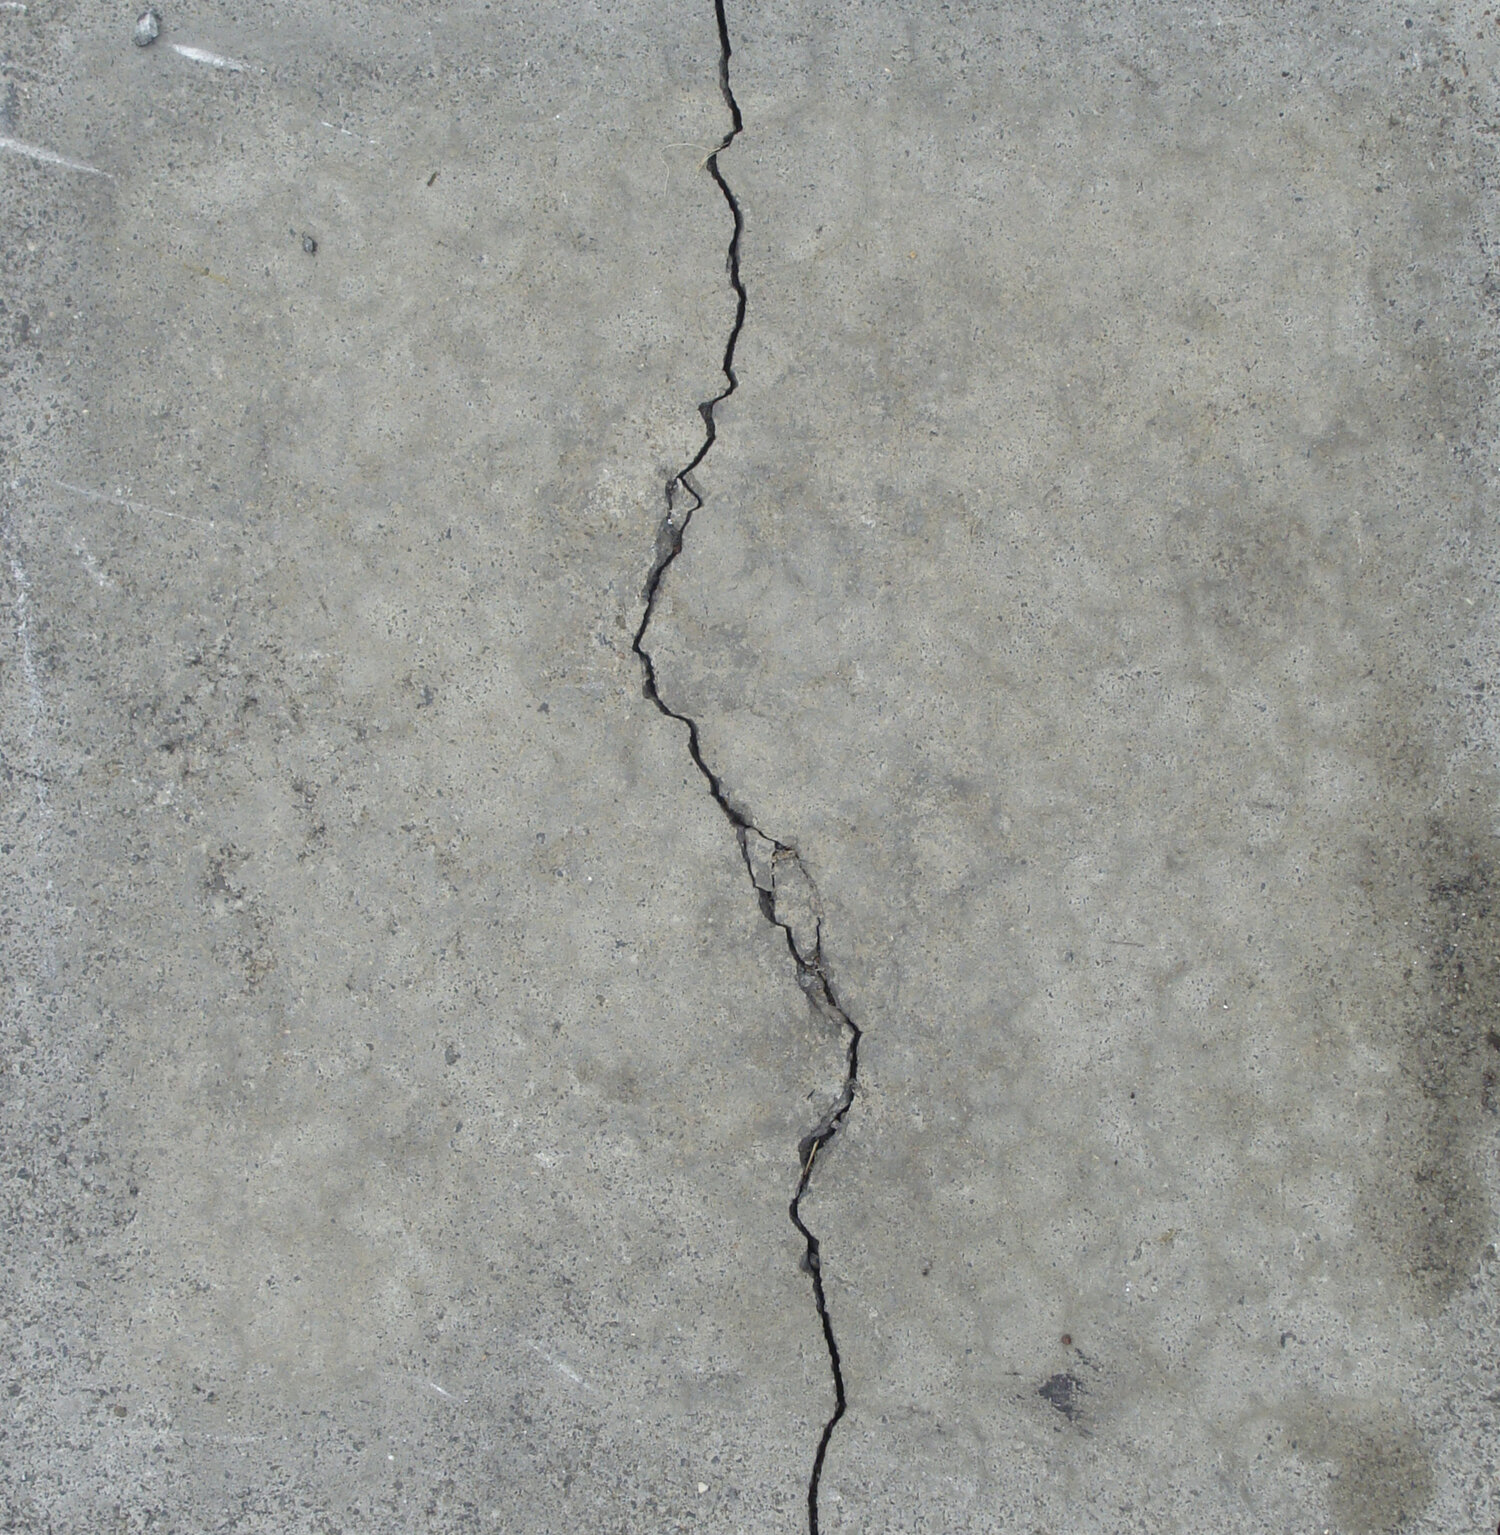 Молодой трещины. Усадочные трещины в бетоне. Температурно-усадочные трещины в бетоне. Усадочные трещины Сибит. Усадочные трещины в бетонных полах.